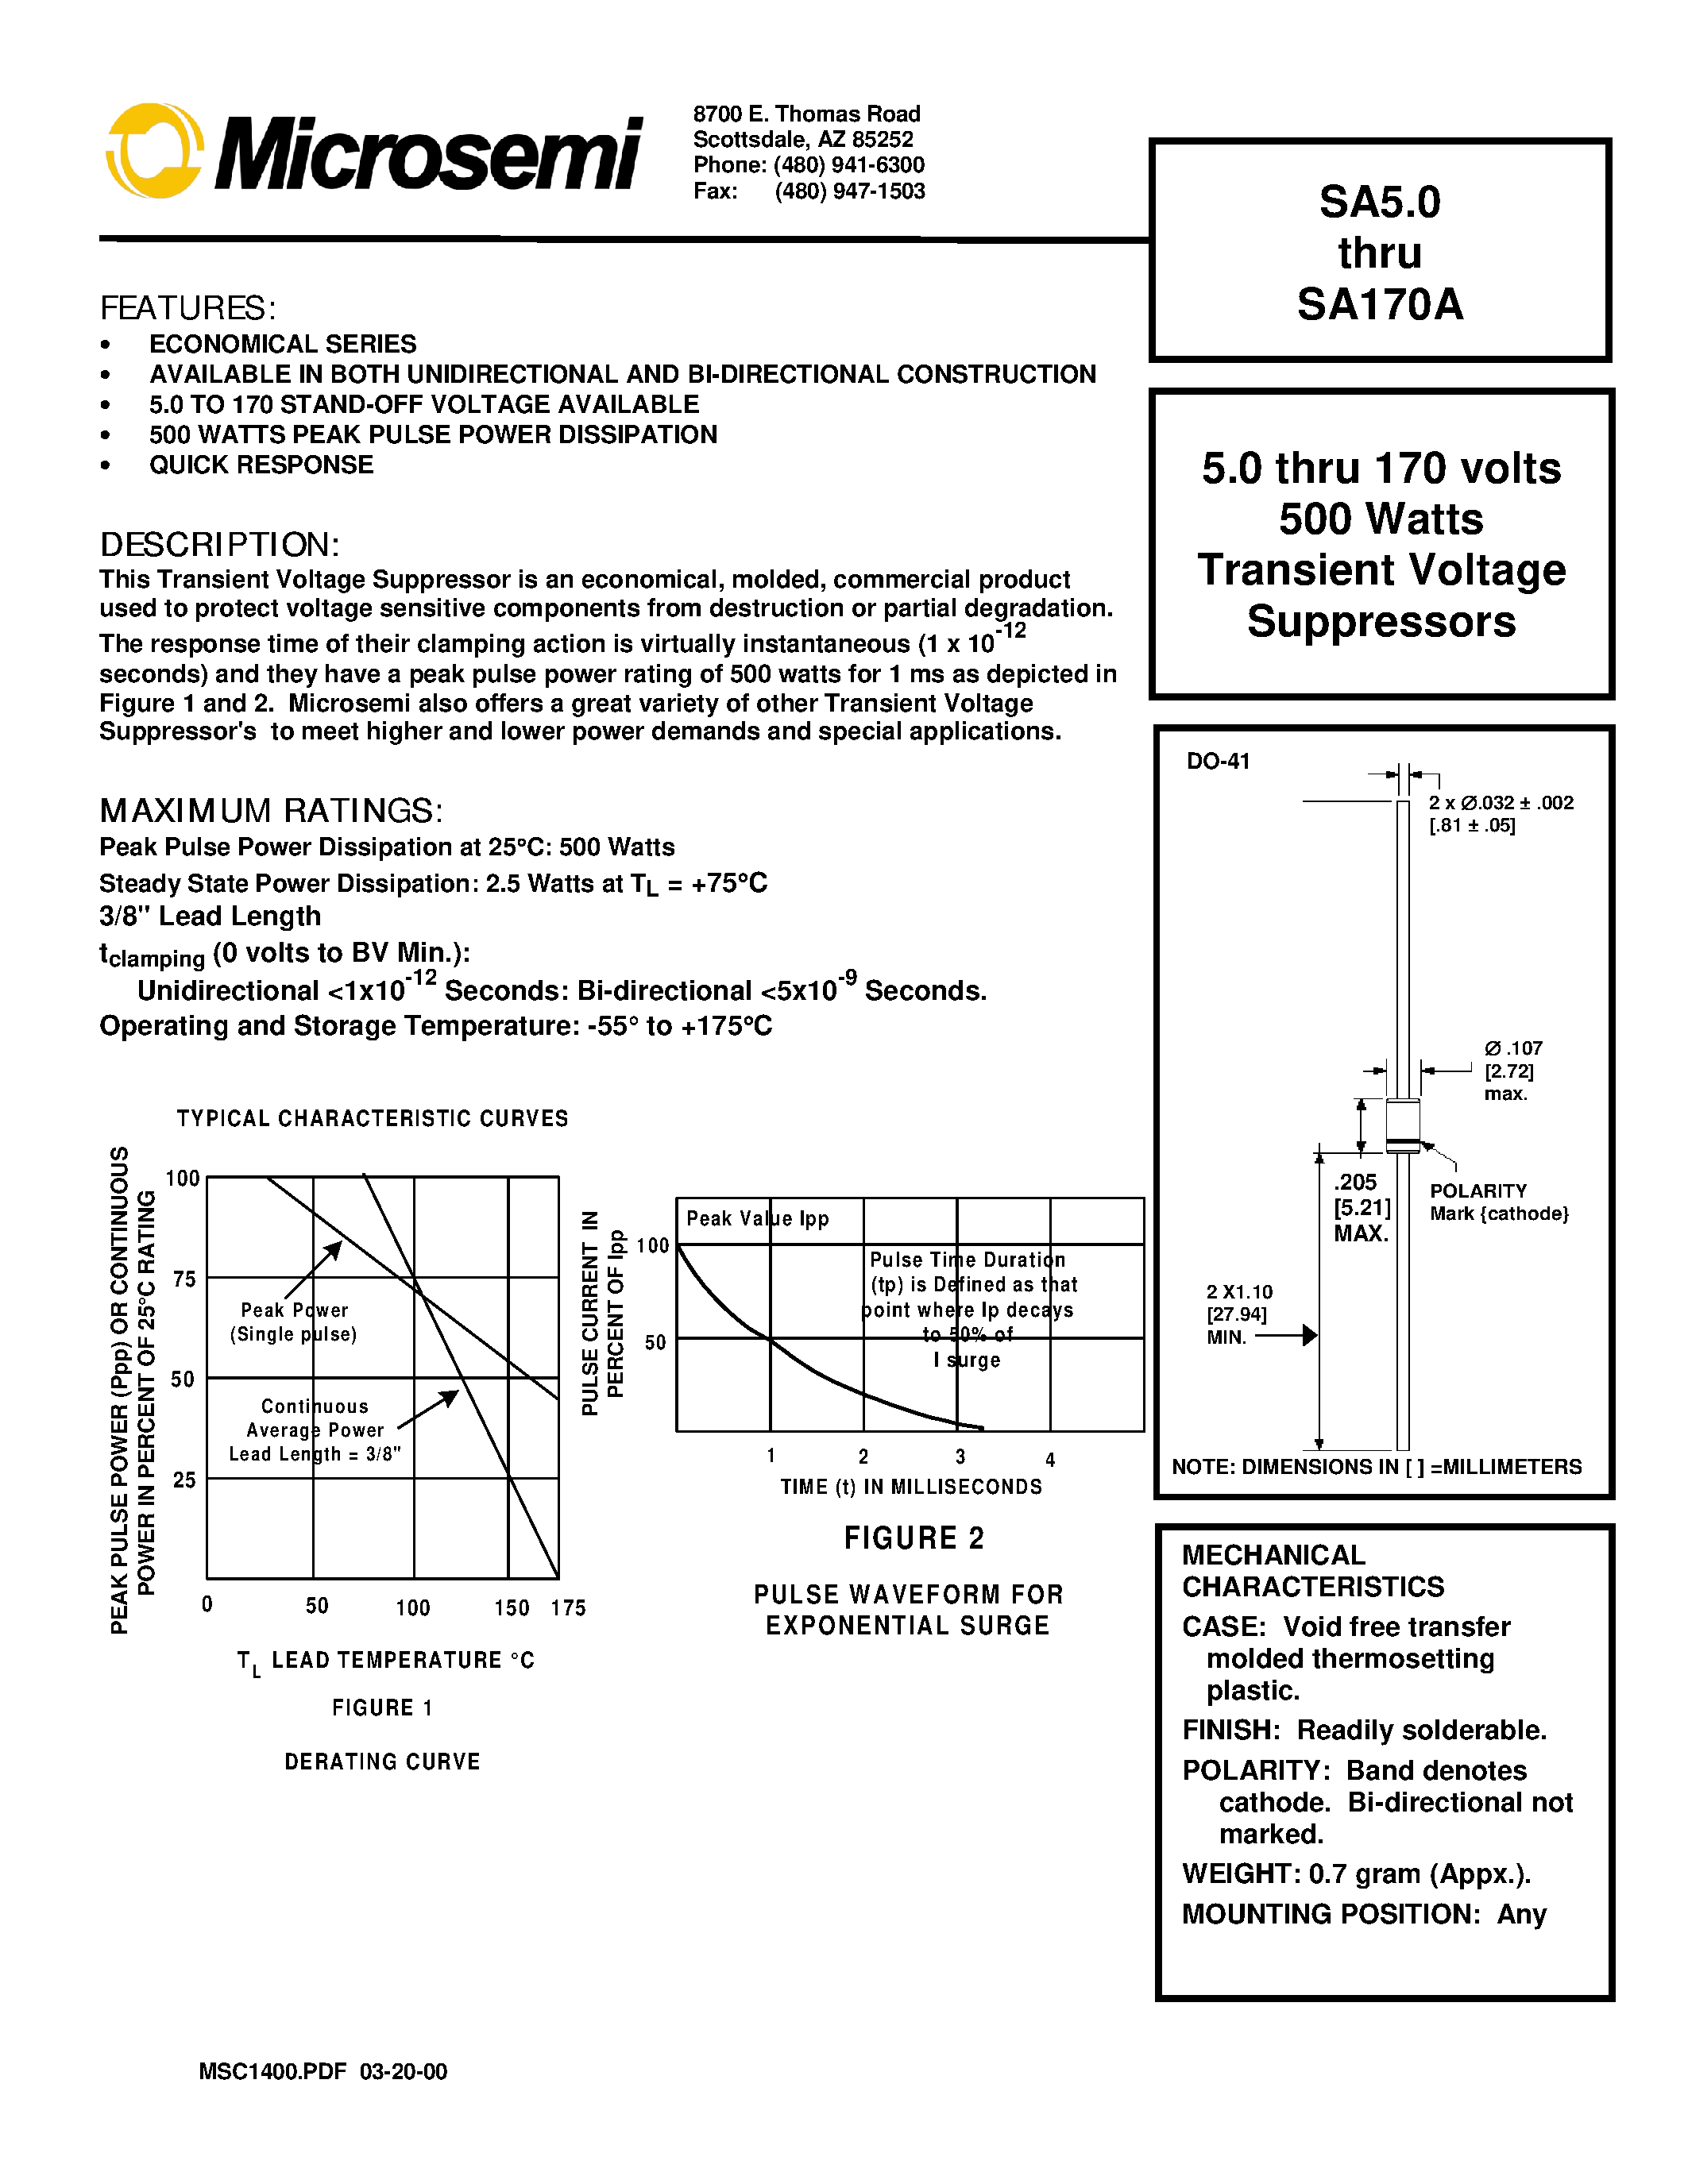 Datasheet SA26 - 5.0 thru 170 volts 500 Watts Transient Voltage Suppressors page 1